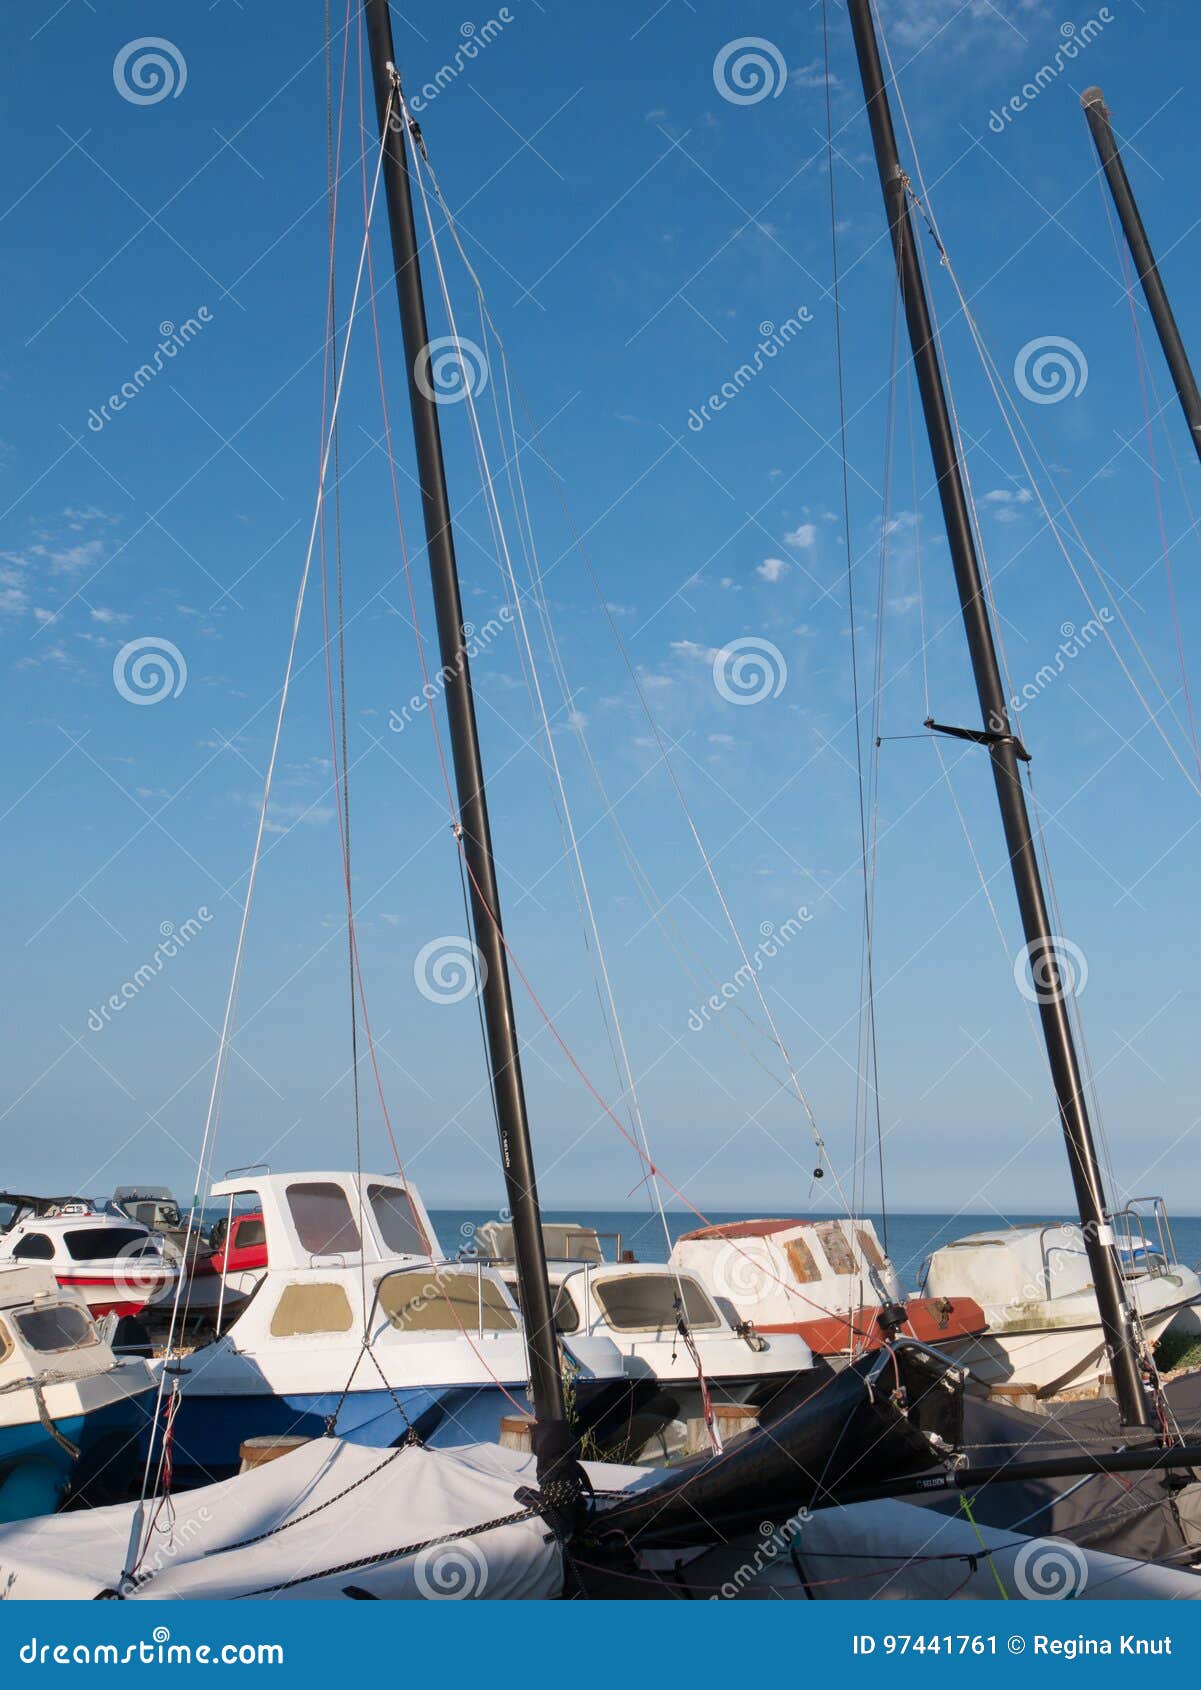 at the coast with sailing boats